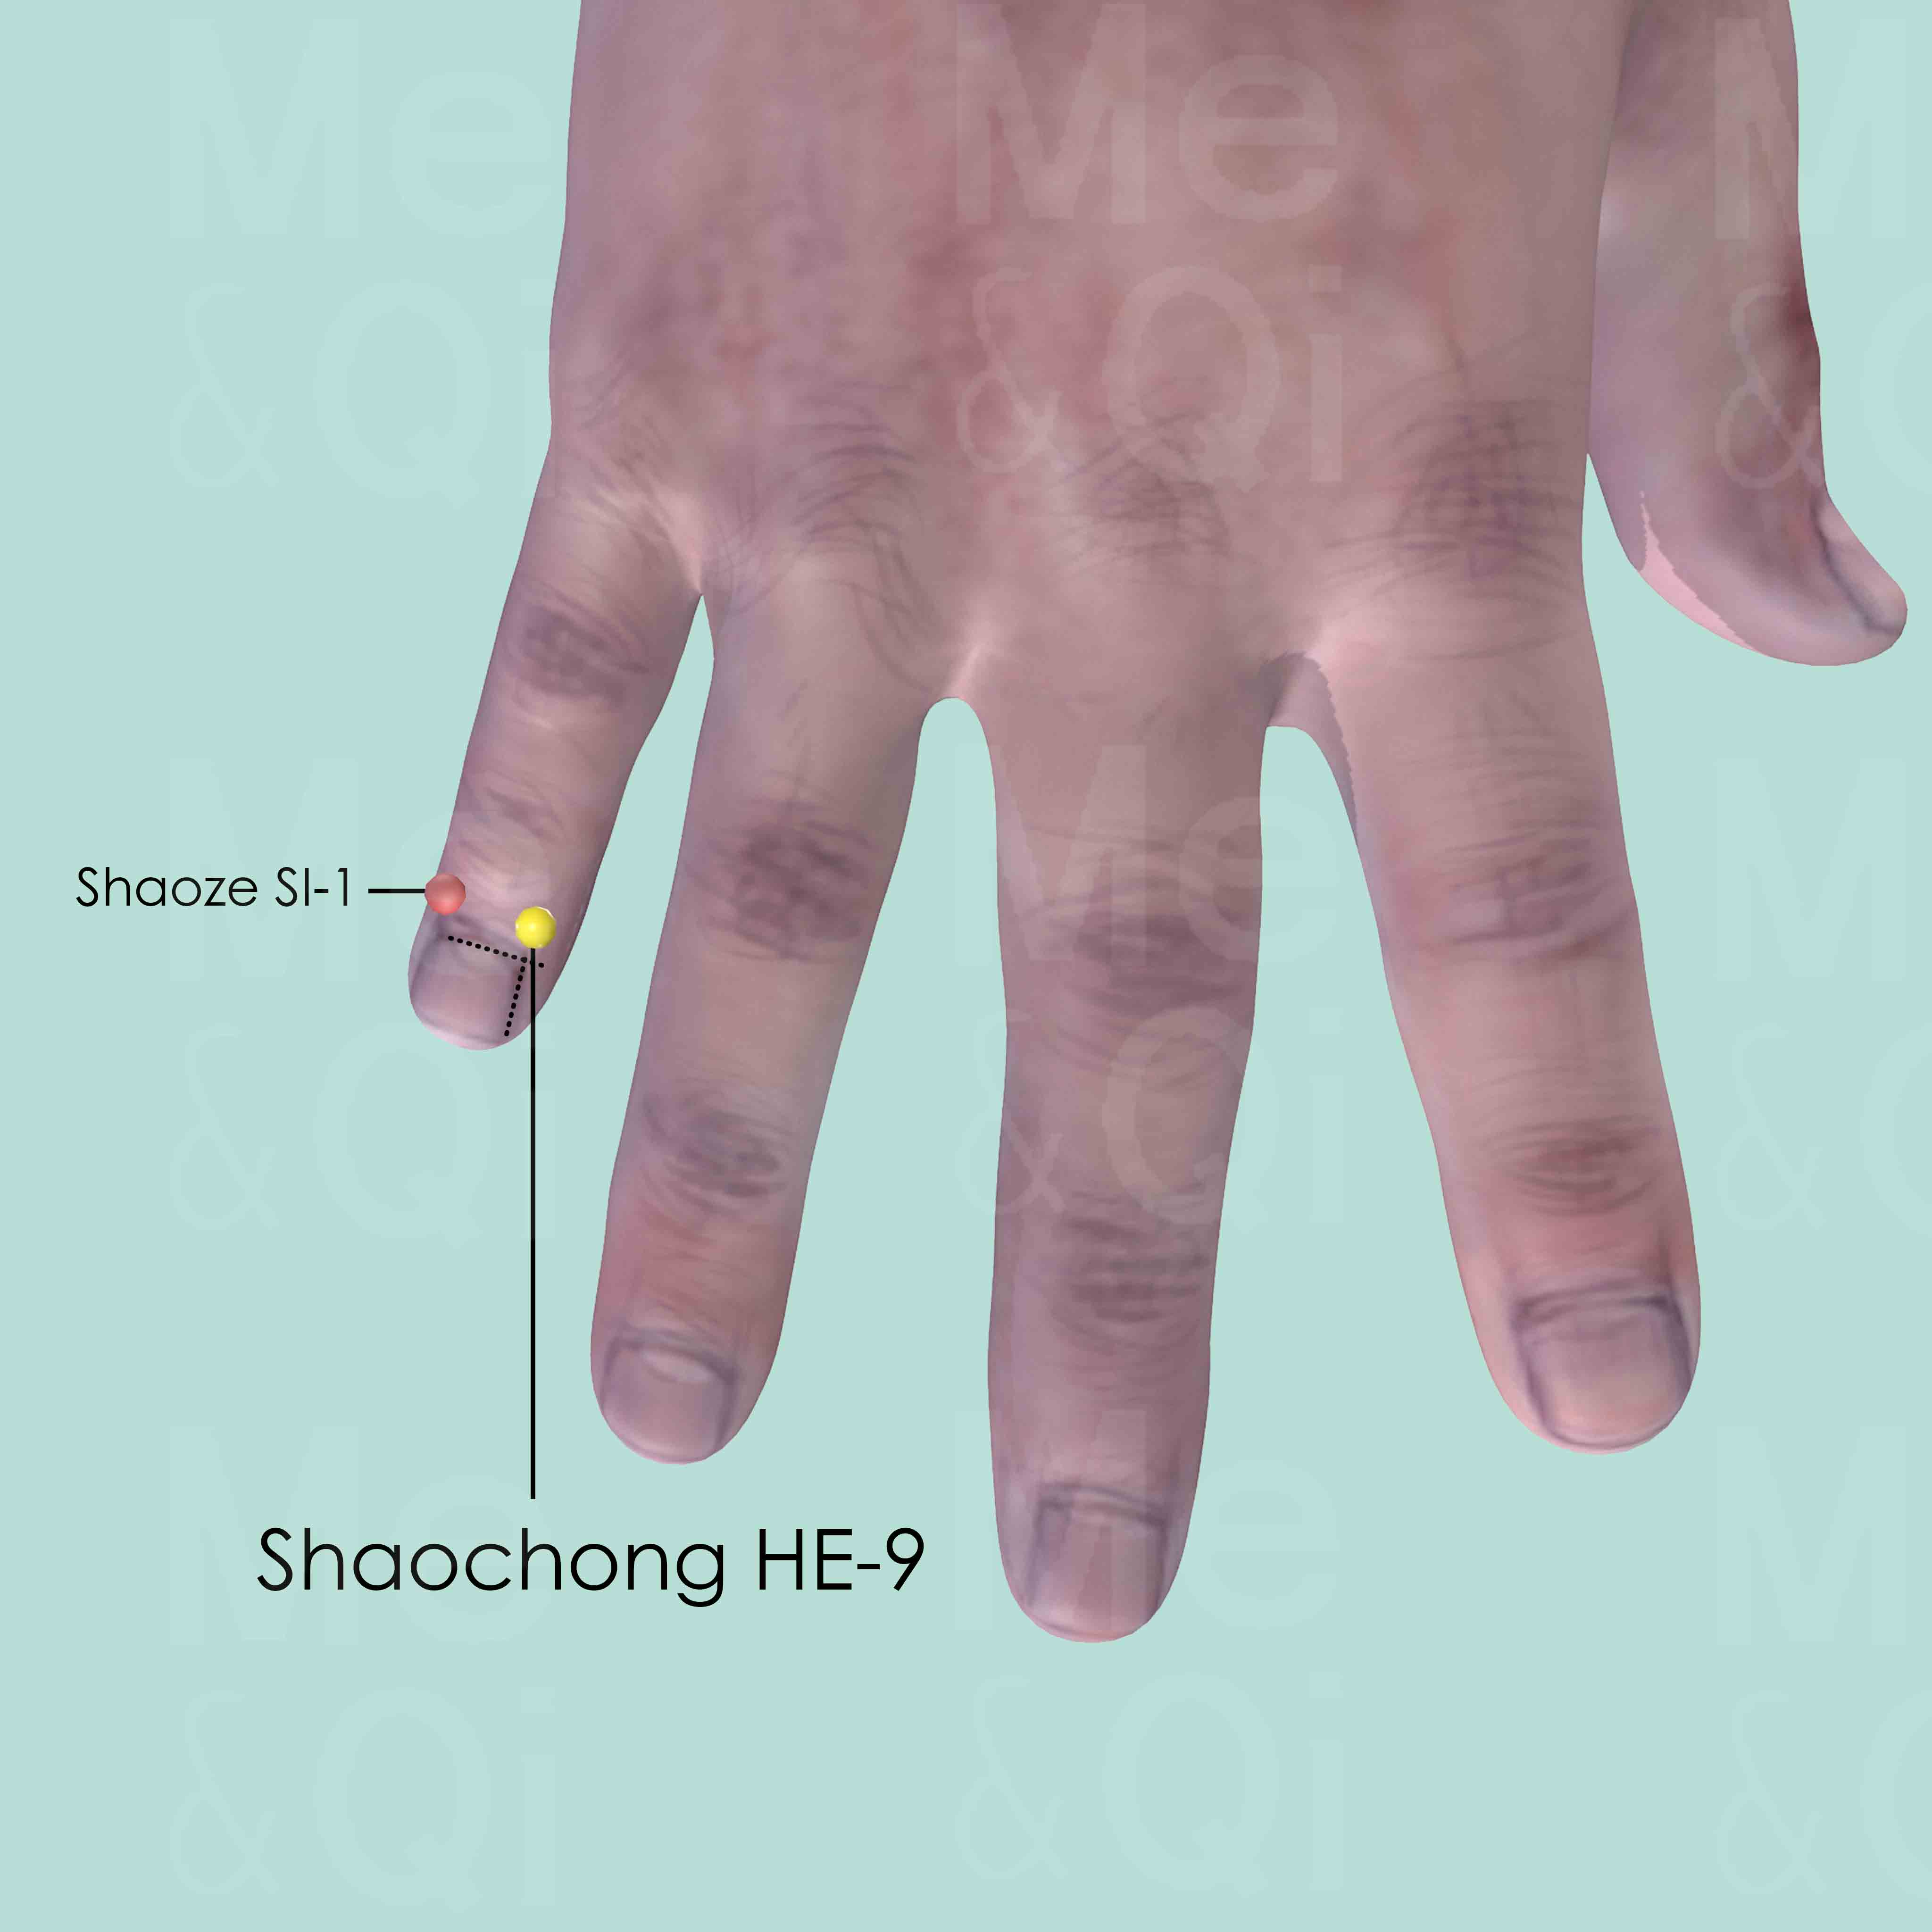 Shaochong HE-9